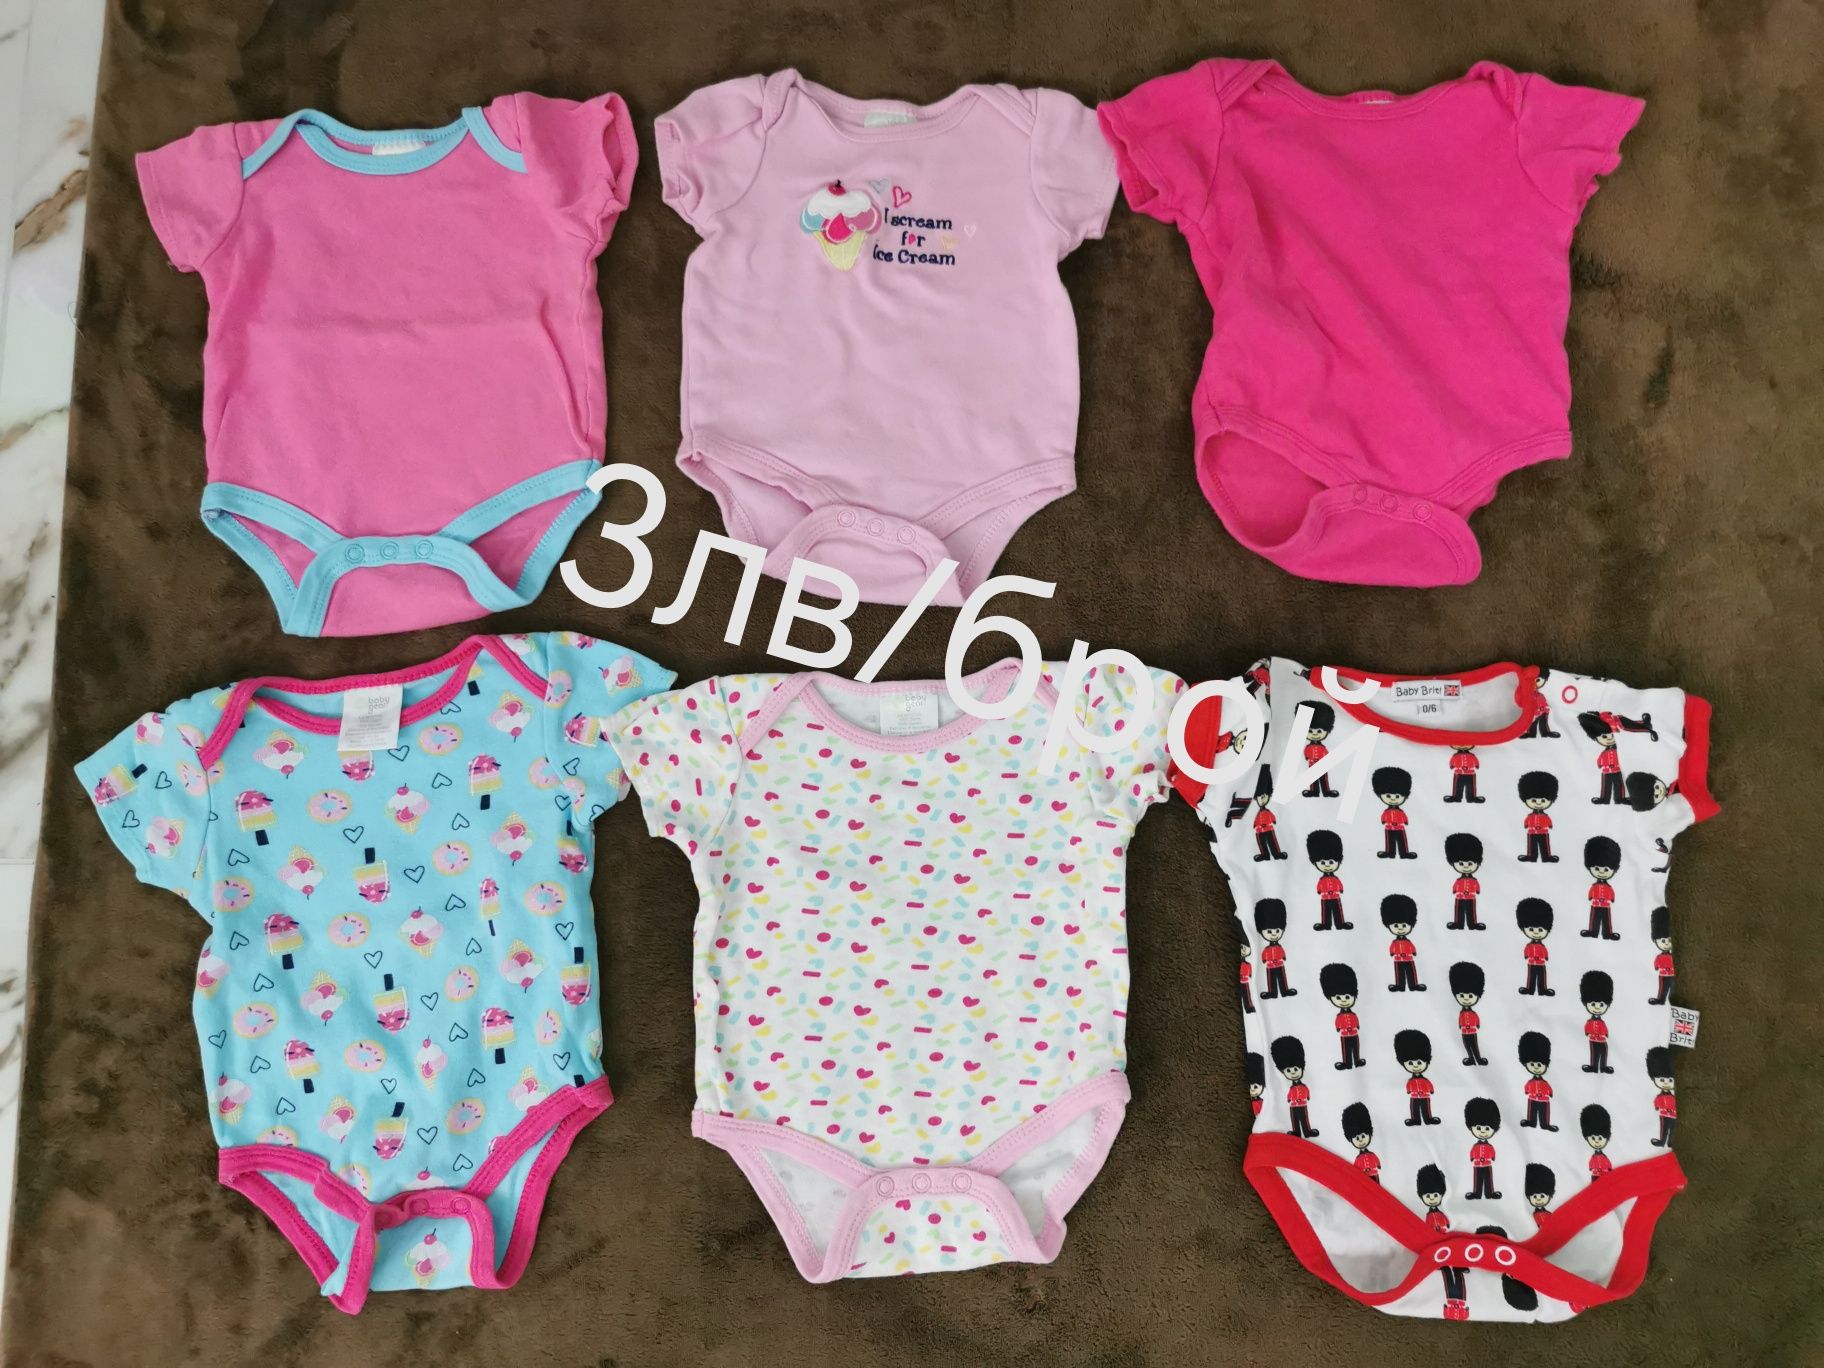 Бебешки дрехи за момиче, 0-3м, 3-6м